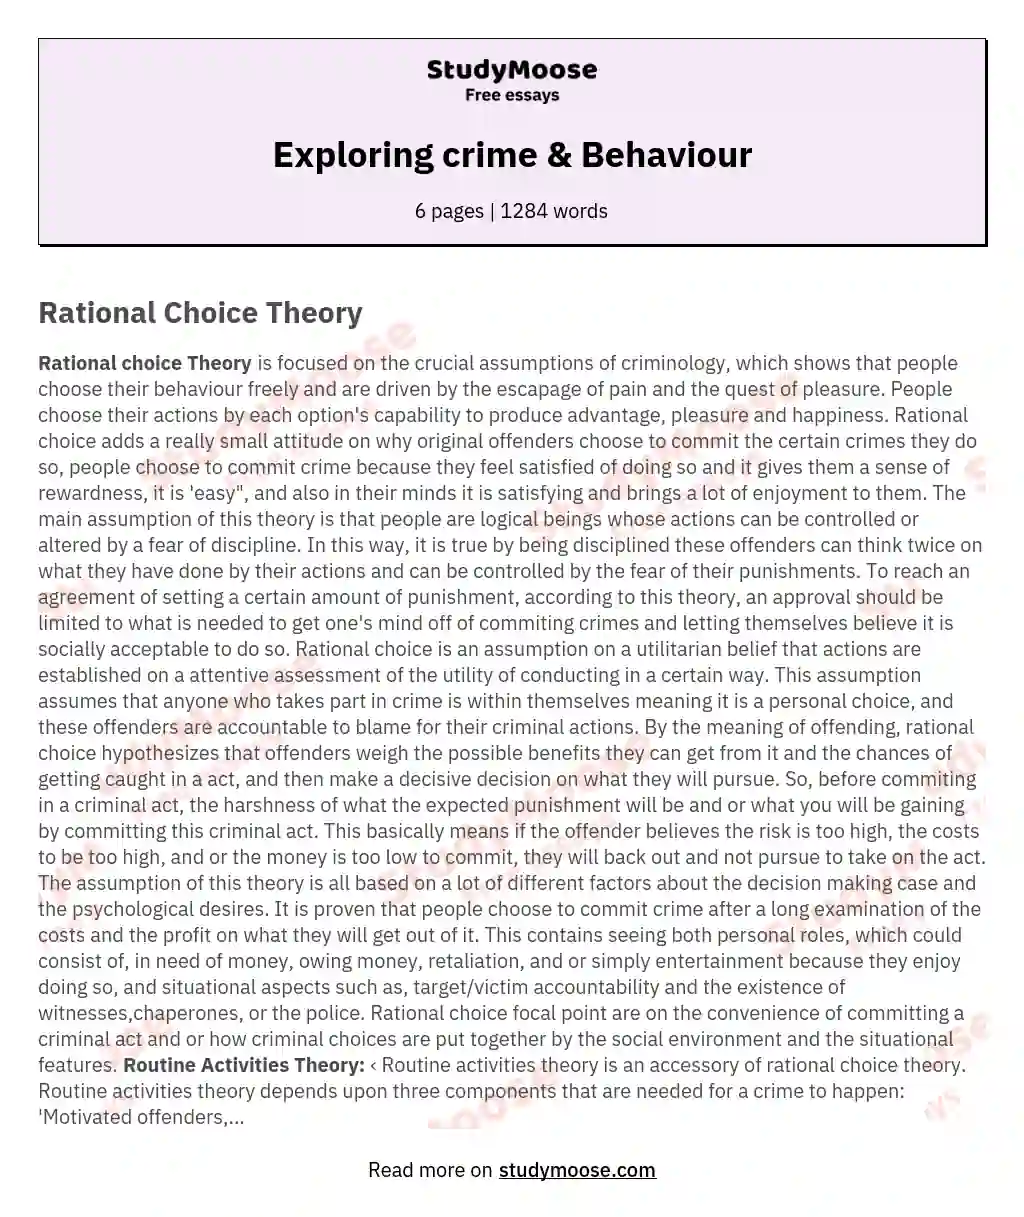 Exploring crime & Behaviour essay